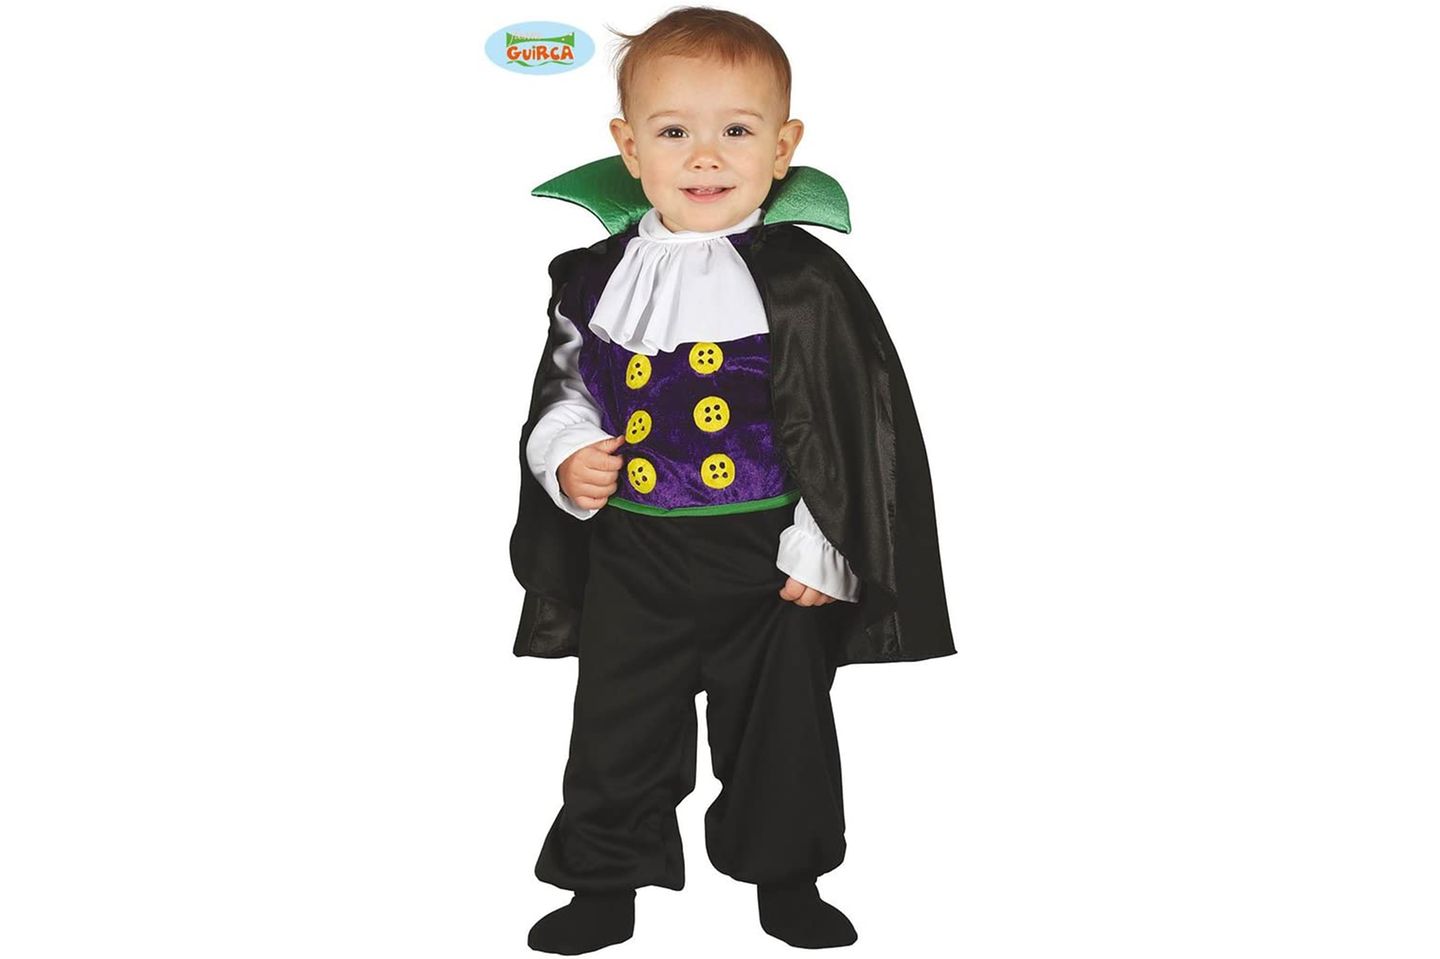 Halloweenkostüm für Kinder: Baby Dracula